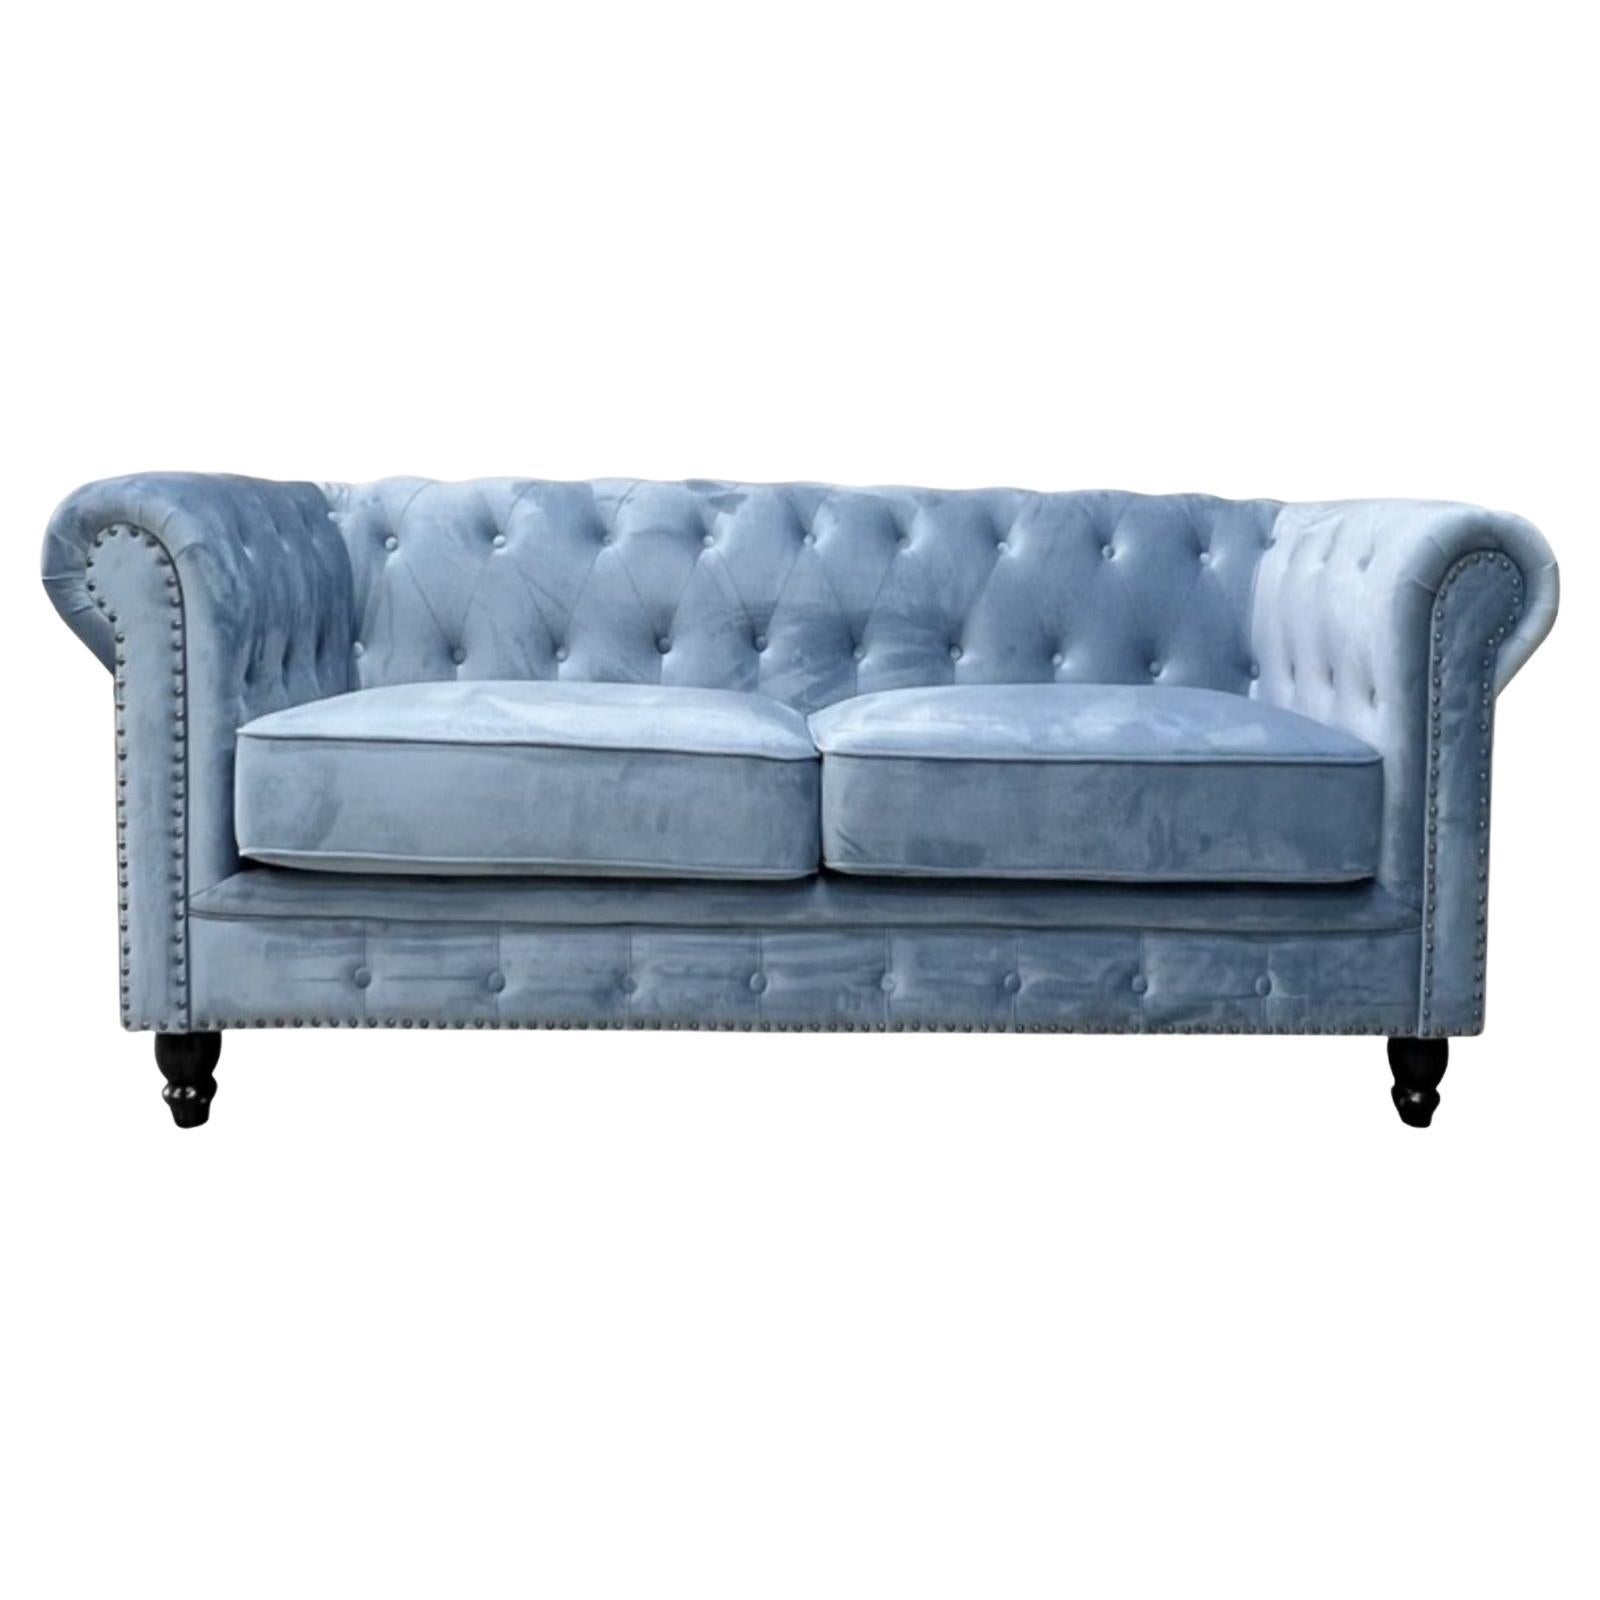 New Chester Premium 2 Seater Sofa, Dusky Blue Velvet Upholstery For Sale